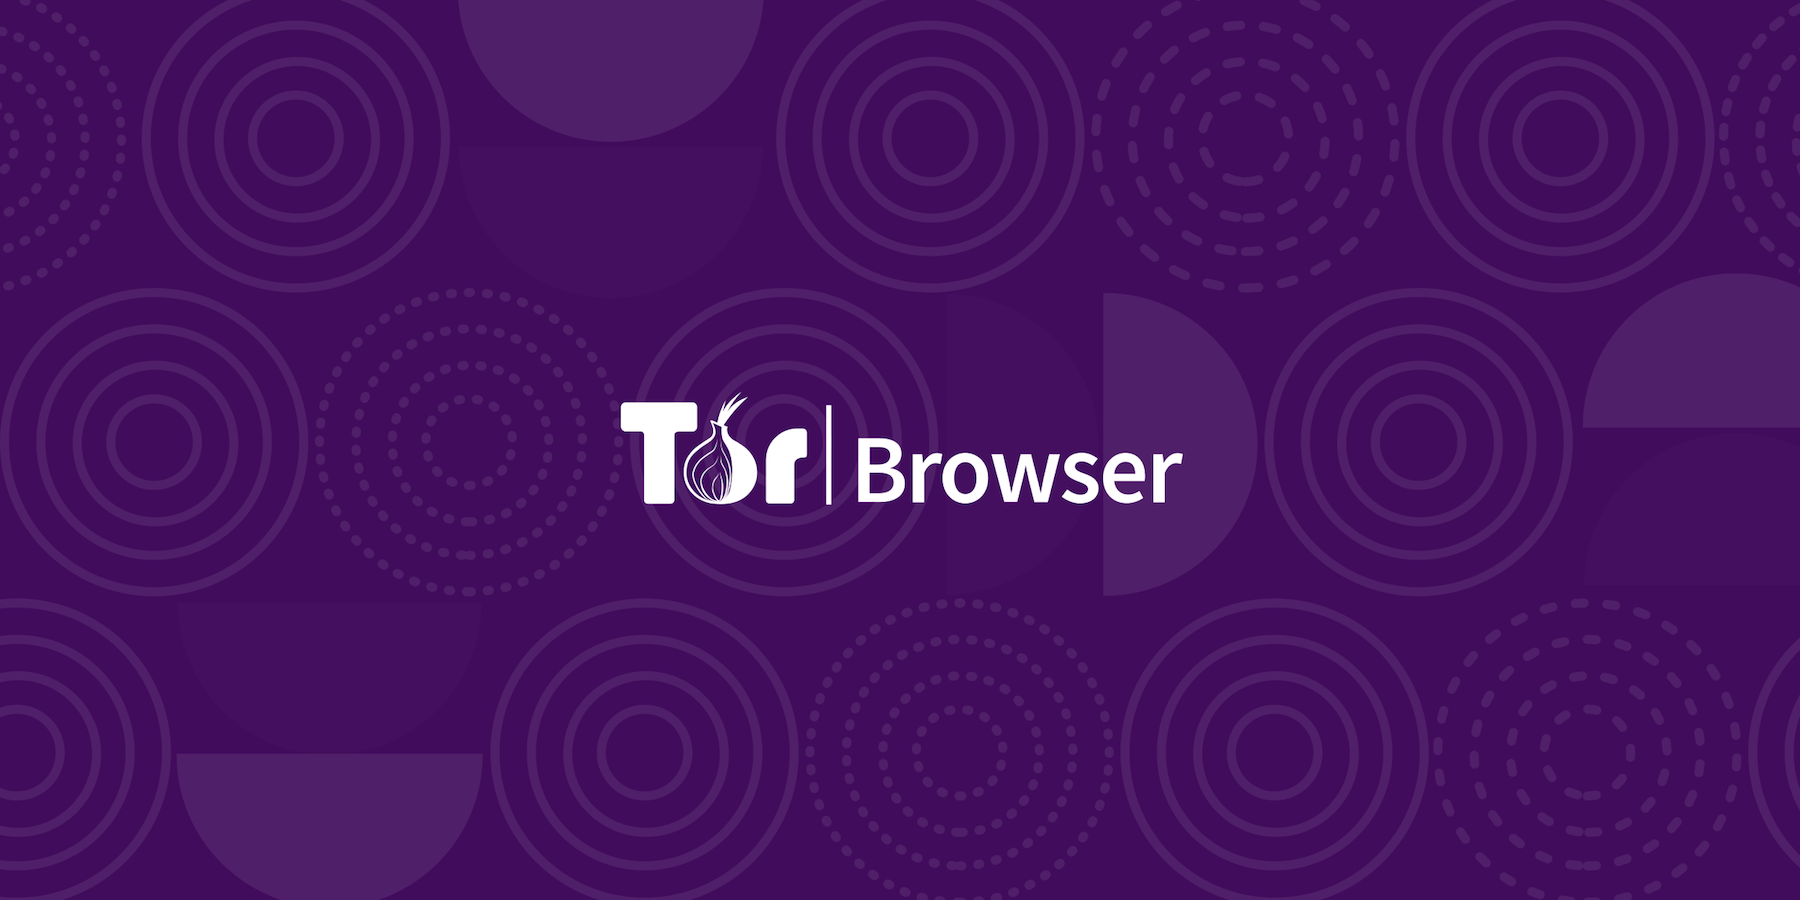 Tor browser alpha андроид скачать тор браузер бесплатно на русском для айфона hyrda вход